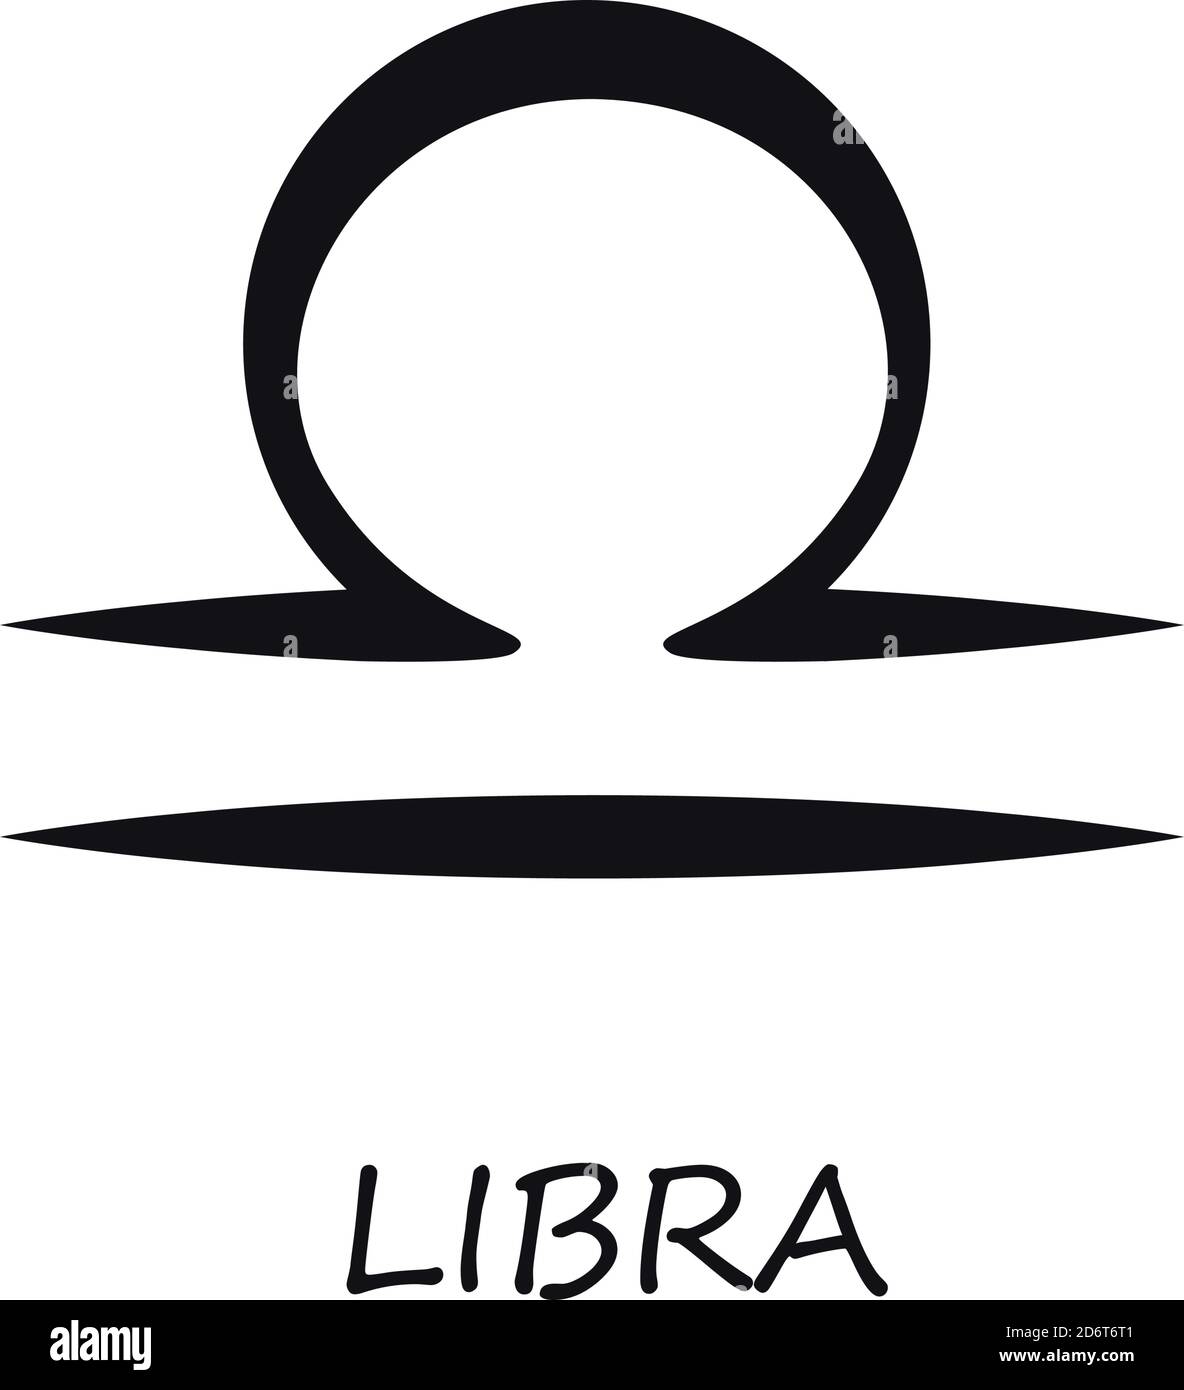 Immagine vettoriale nera del segno zodiacale della Bilancia Immagine e  Vettoriale - Alamy